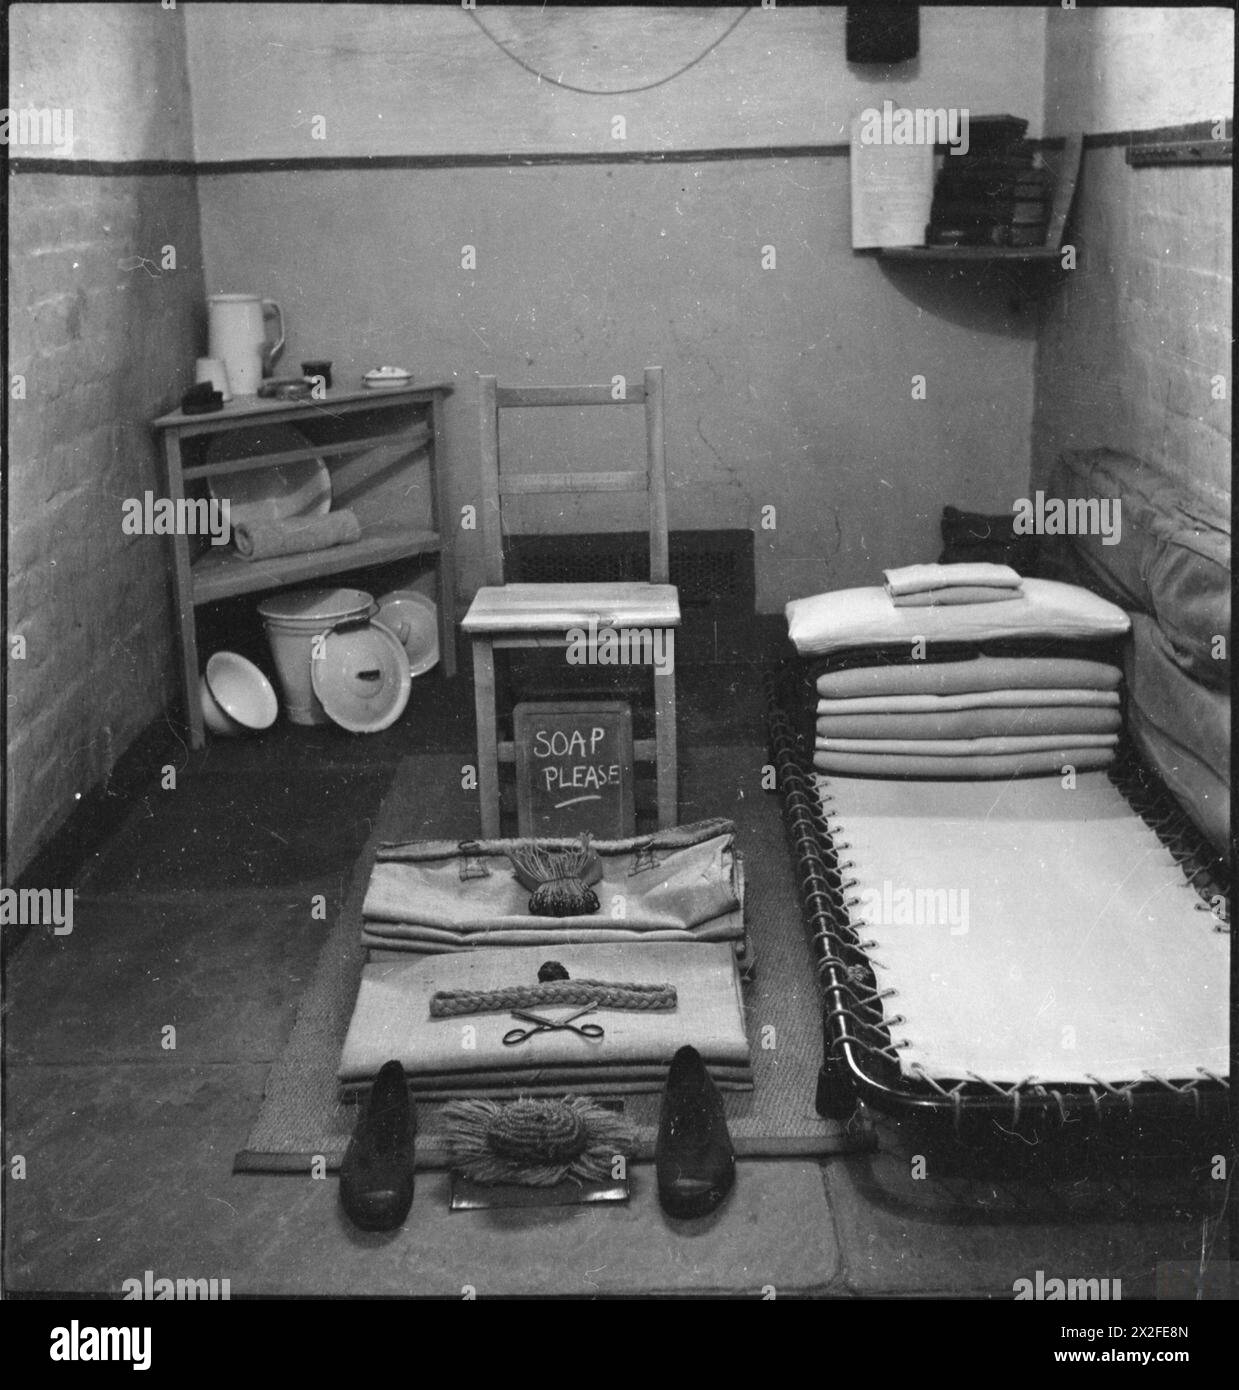 WAKEFIELD-AUSBILDUNGSGEFÄNGNIS UND -LAGER: ALLTAG IN Einem BRITISCHEN GEFÄNGNIS, WAKEFIELD, YORKSHIRE, ENGLAND, 1944 - Ein Blick auf das Zimmer eines Häftlings im Wakefield-Gefängnis. Deutlich sichtbar sind das Bett, ein Stuhl, mehrere kleine Regale und ein Schaufel. Der Rest der Sachen des Häftlings, wie ein Paar Schuhe und ein Kamm, wurde ordentlich aufgestellt, bereit zur Inspektion. Auf einer kleinen Tafel sind die Worte „Seife bitte“ gemalt. Stockfoto